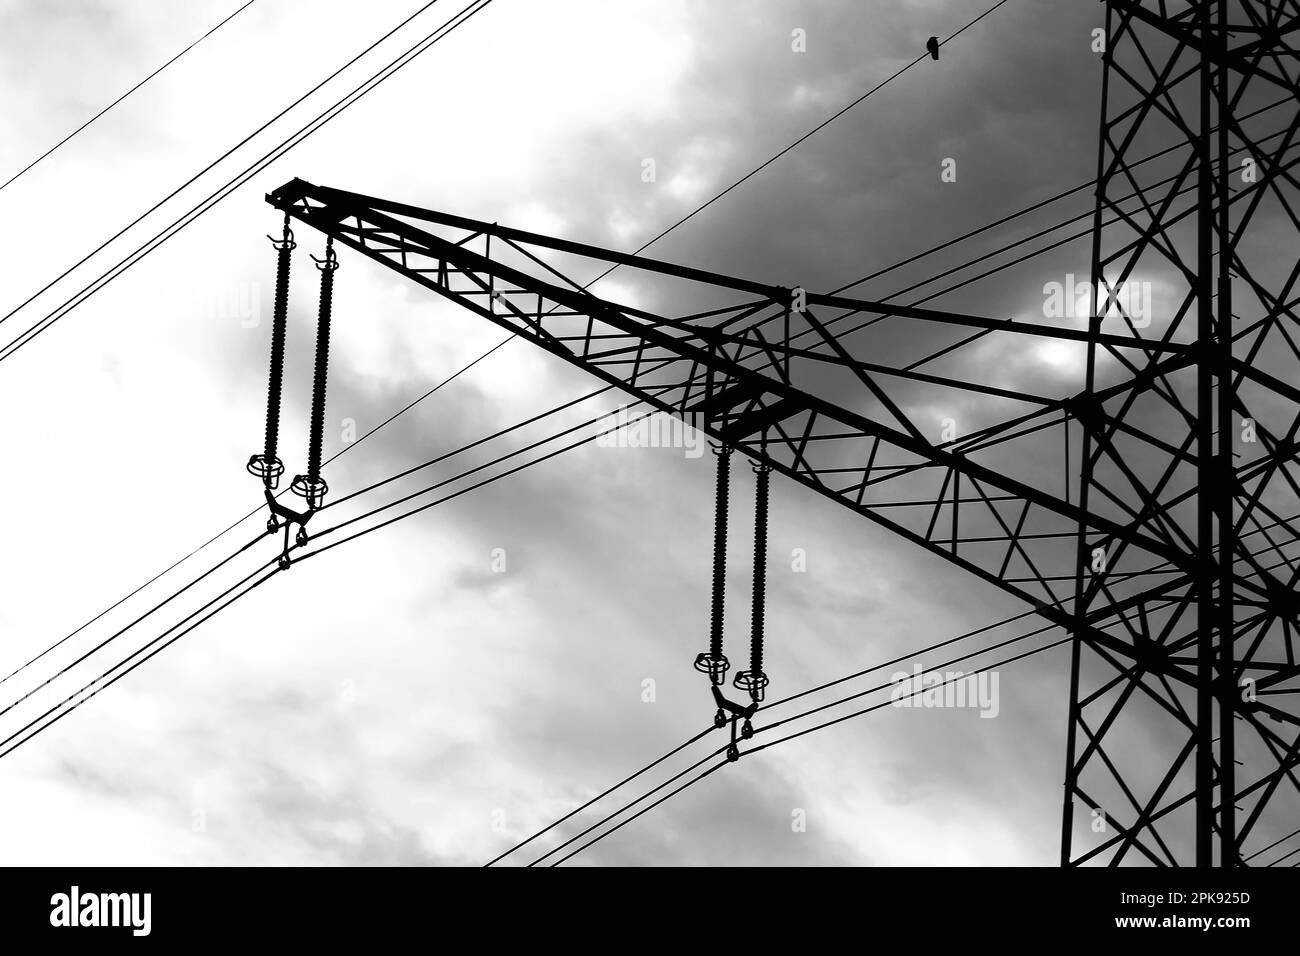 Crise énergétique en Europe. Cadre de la colonne de puissance avec un seul oiseau assis sur la ligne d'alimentation électrique Banque D'Images